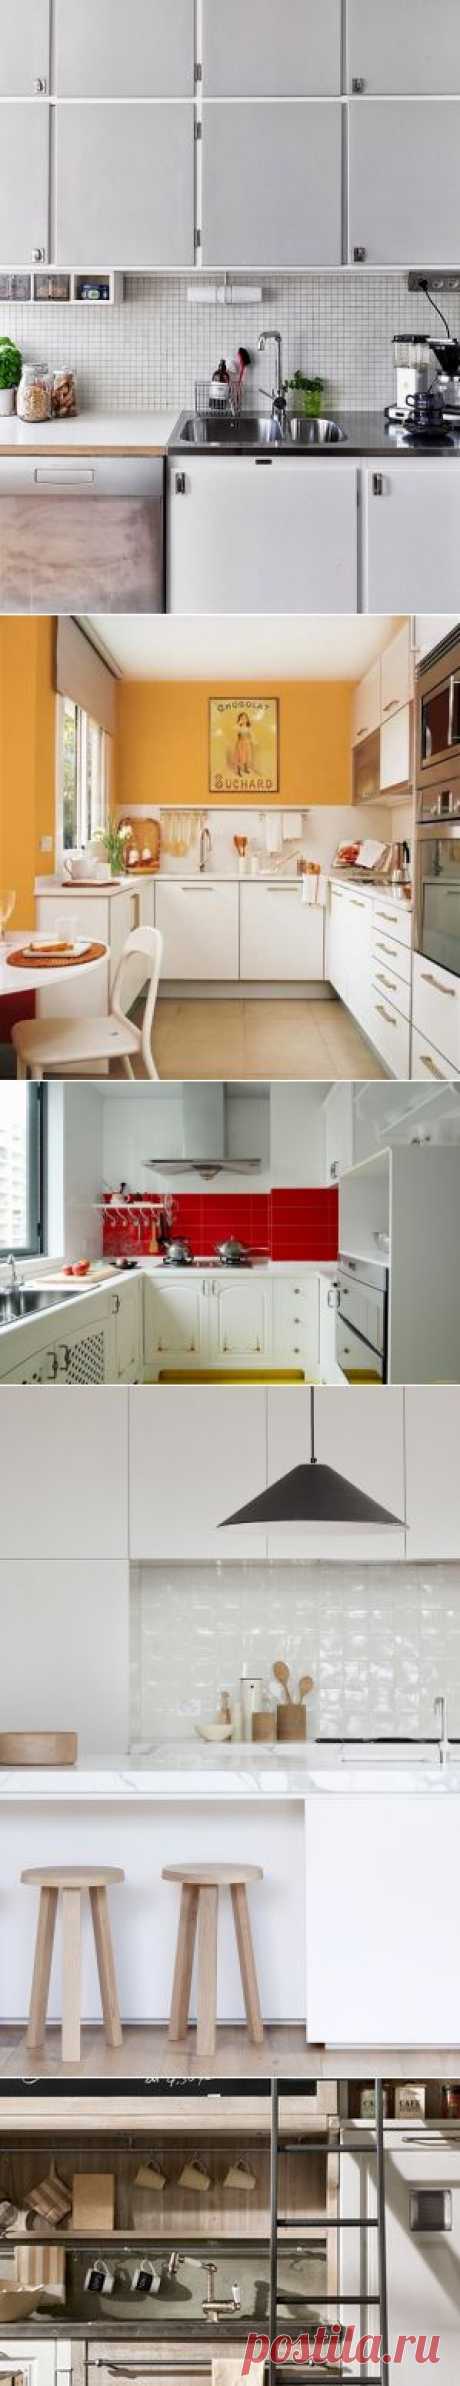 Как увеличить маленькую кухню: 6 действенных способов | Свежие идеи дизайна интерьеров, декора, архитектуры на InMyRoom.ru